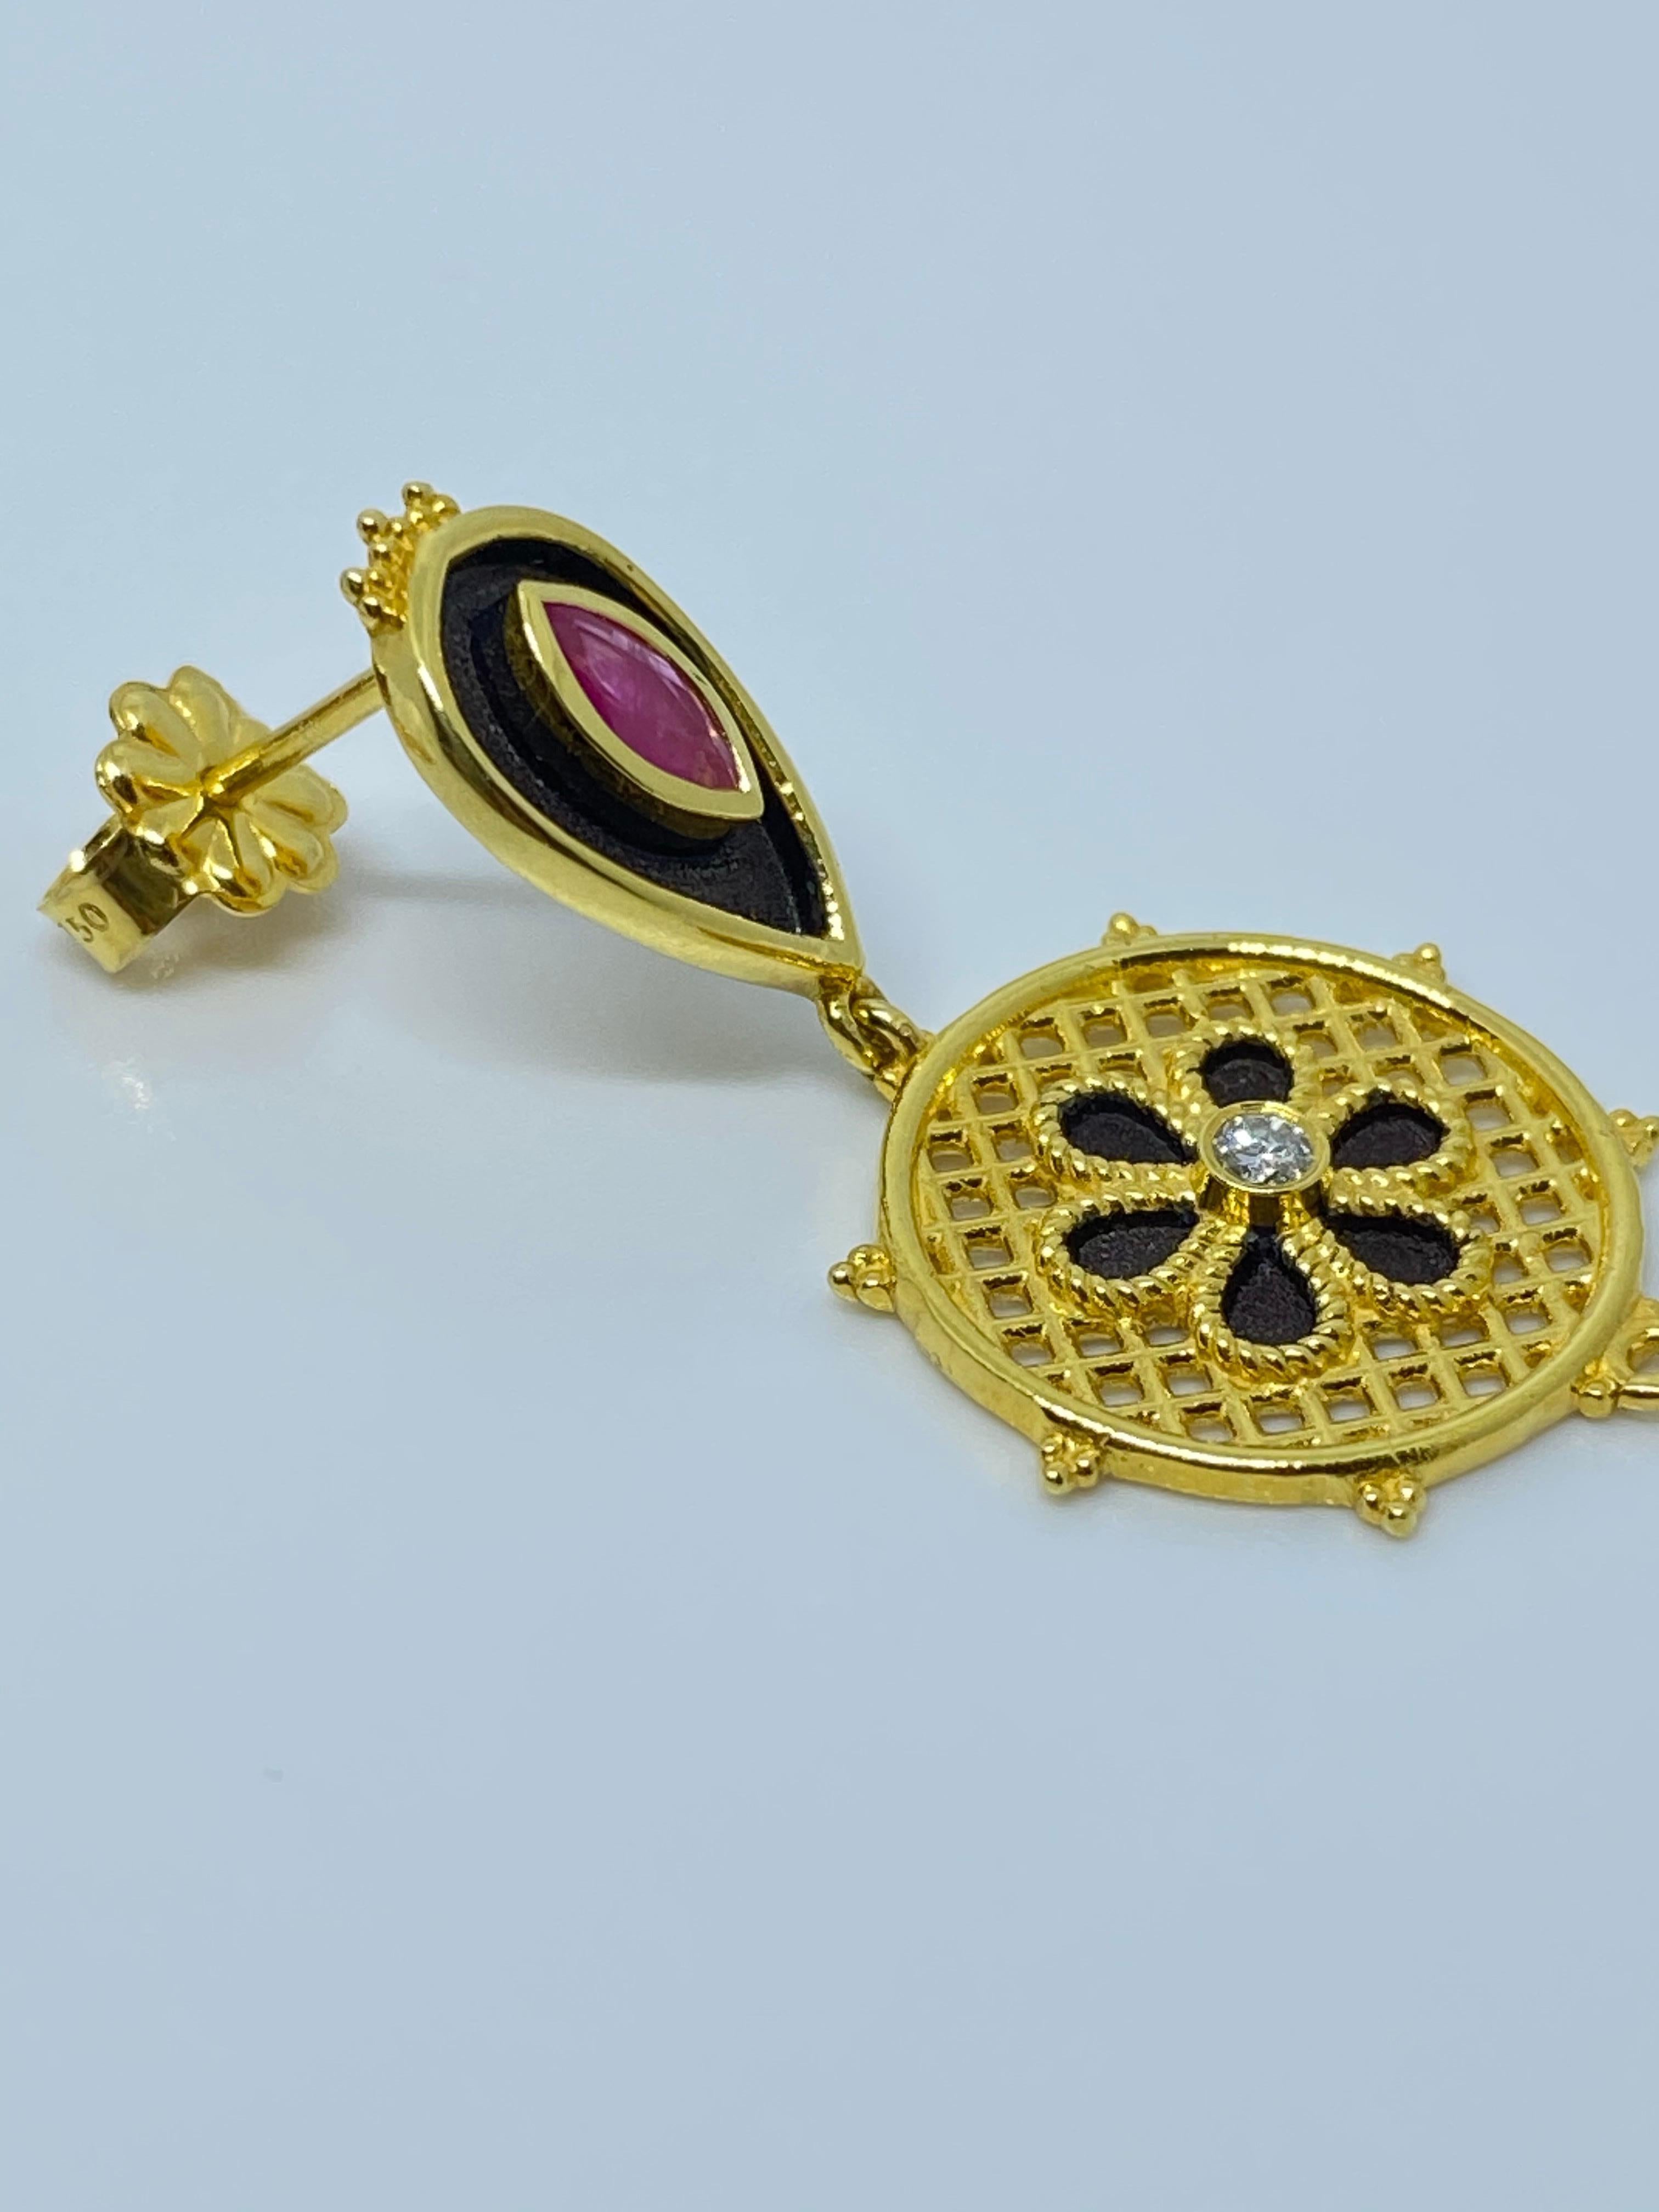 Diese Designer-Ohrringe von S.Georgios sind aus 18 Karat Gelbgold handgefertigt und im byzantinischen Stil mit Granulierung und wunderschöner schwarzer Emaille verziert. Dieses atemberaubende Paar verfügt über 2 Diamanten im Brillantschliff mit